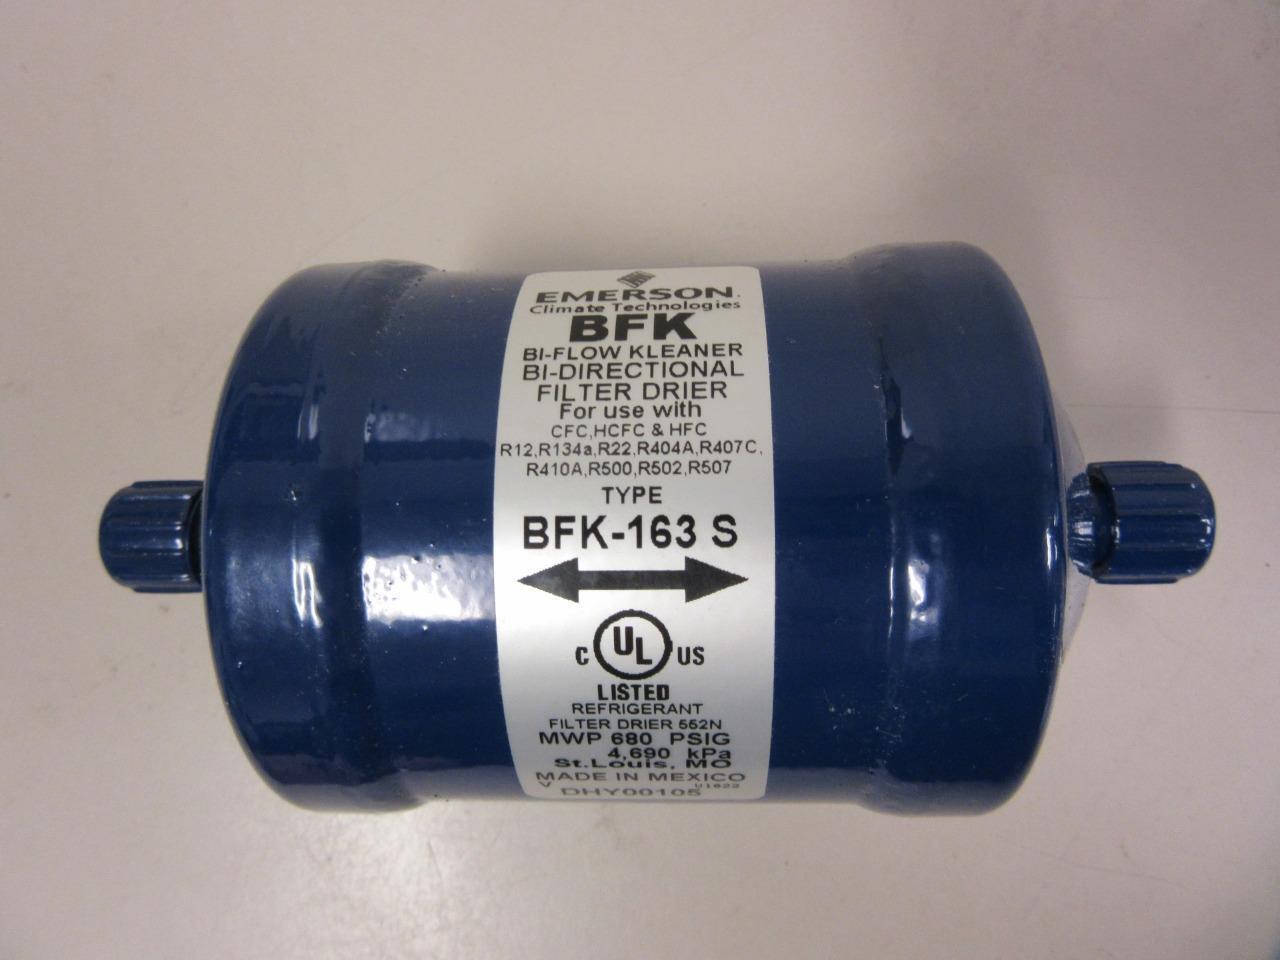 Emerson BFK Bi-Flow Kleaner Bi-Directional Filter Drier BFK-163 S DHY00105 3/8\